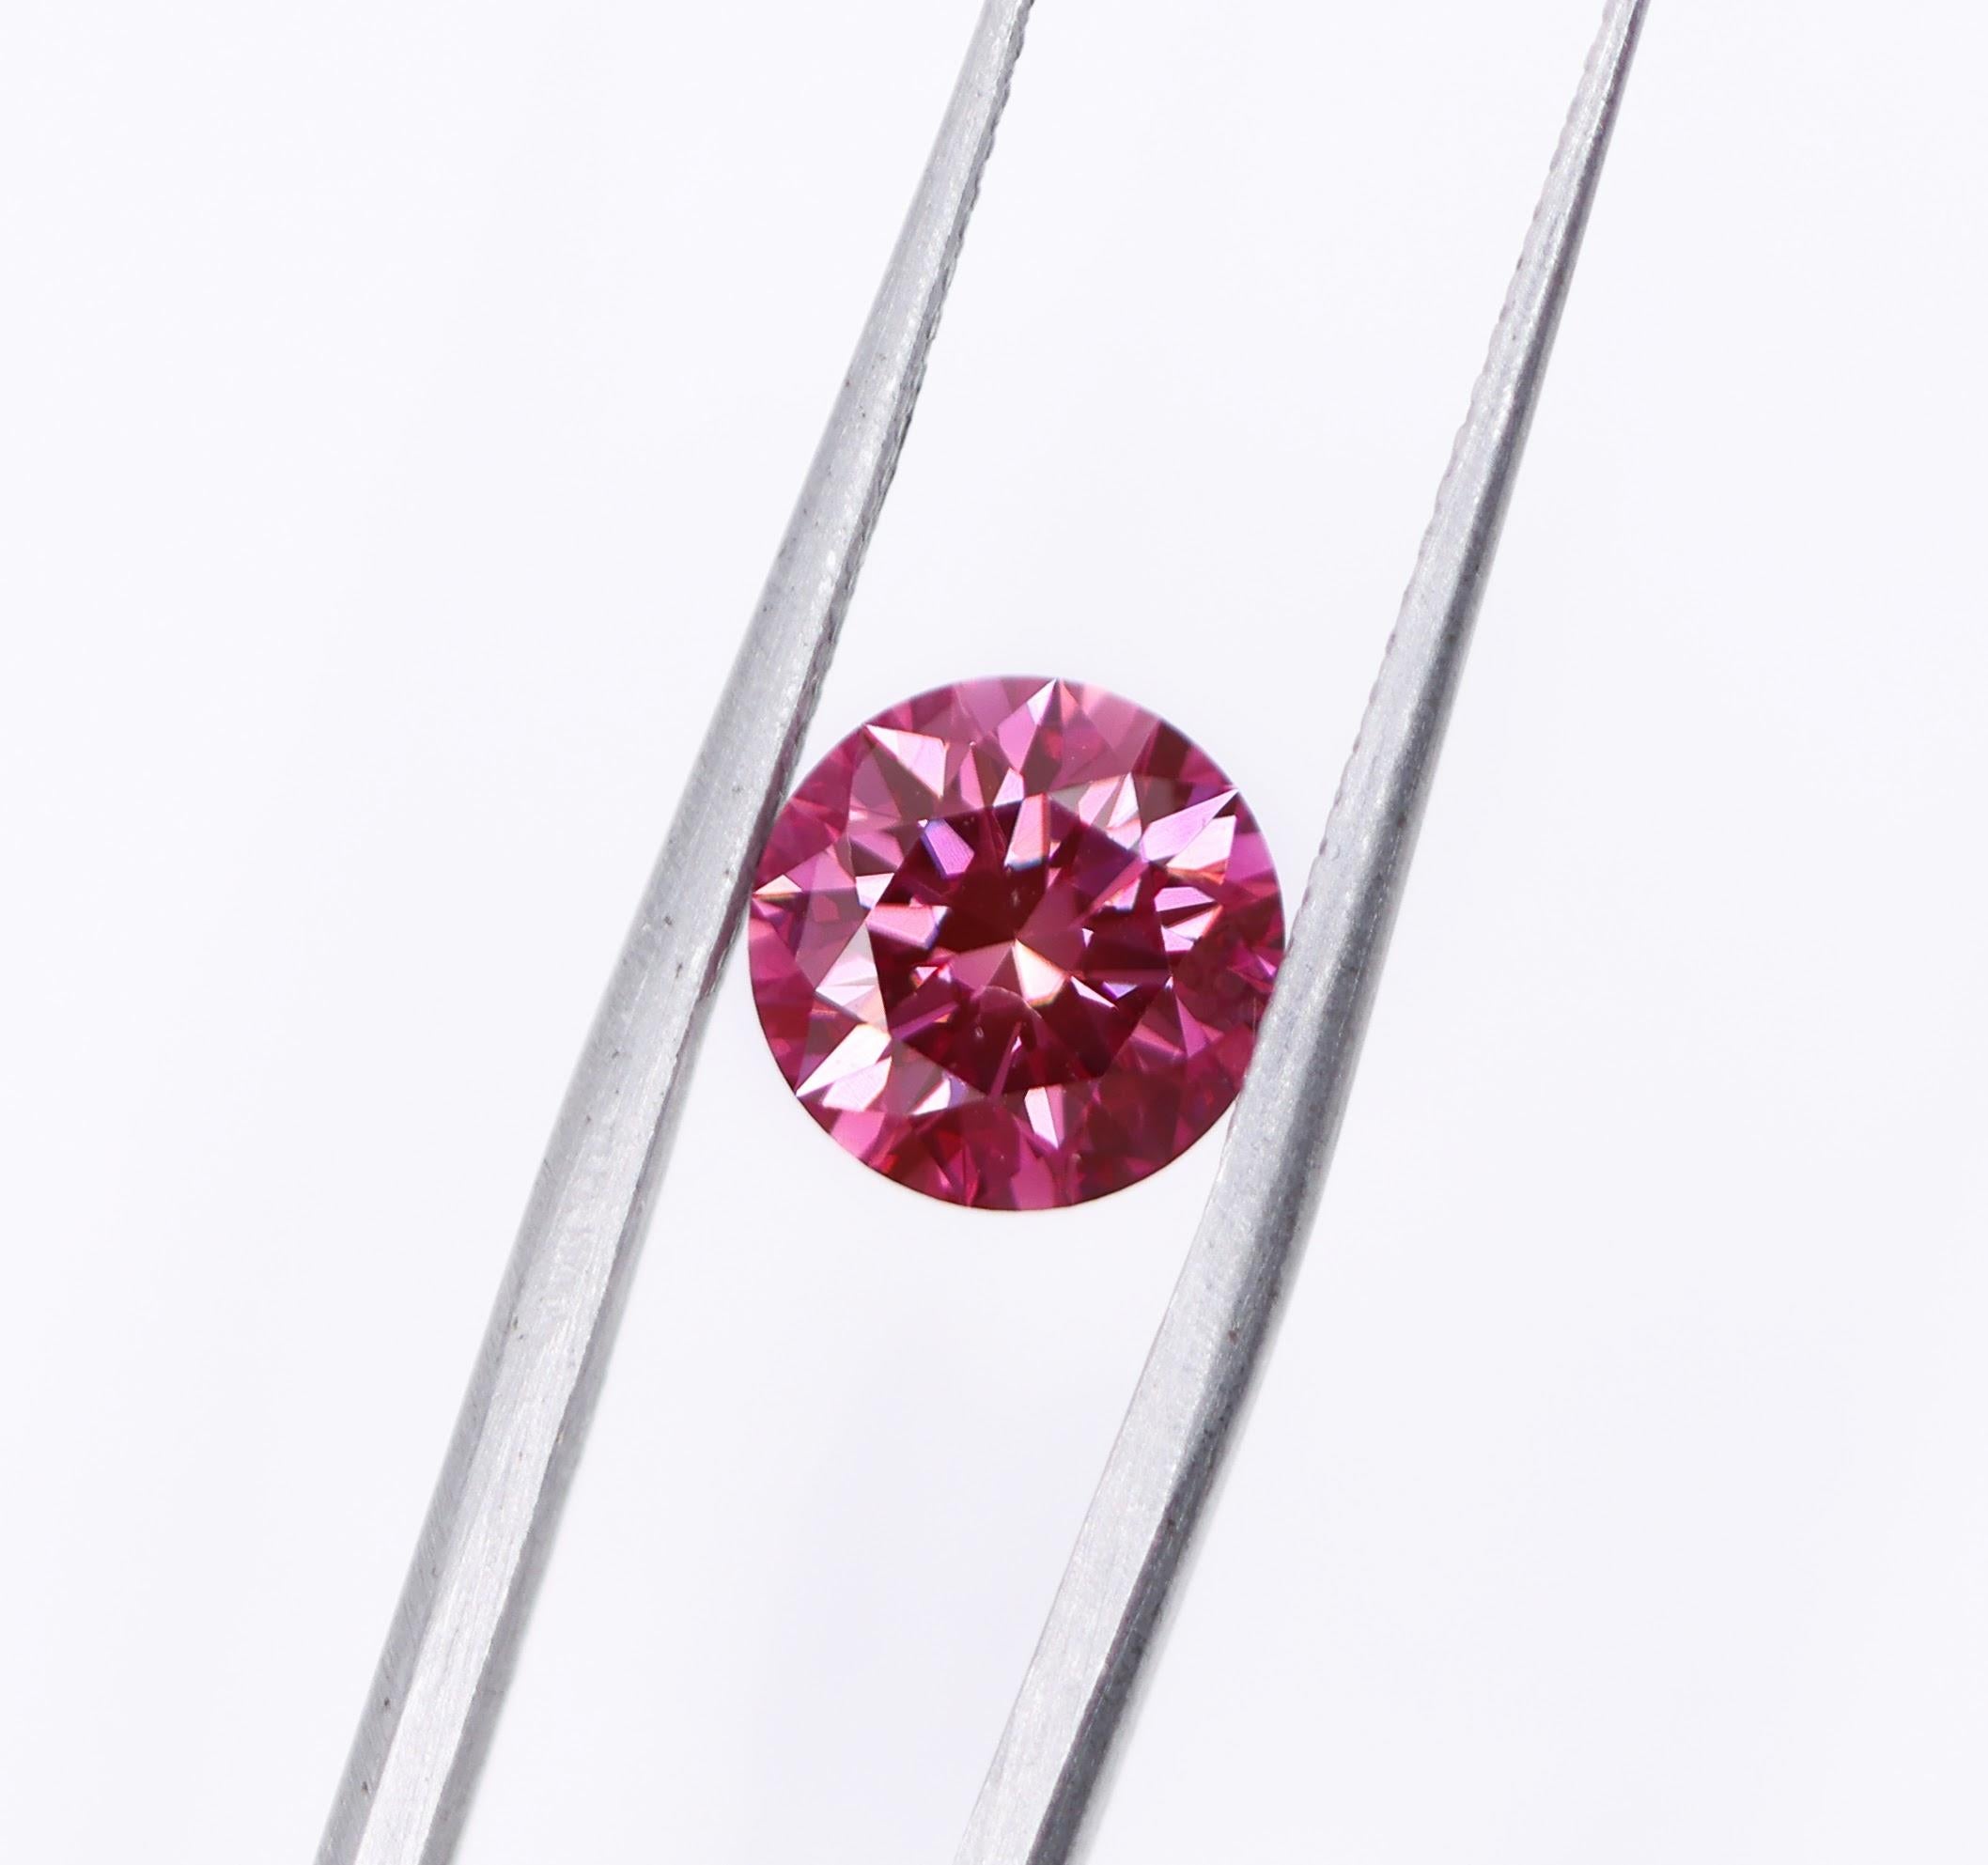 Wir freuen uns sehr, Ihnen diesen wunderschönen rosa Diamanten aus Erdminen anbieten zu können! Dieser Diamant ist HPHT-behandelt, was ihm eine atemberaubende purpurrosa Farbe verleiht. Eine fabelhafte Größe für einen Verlobungsring oder ein